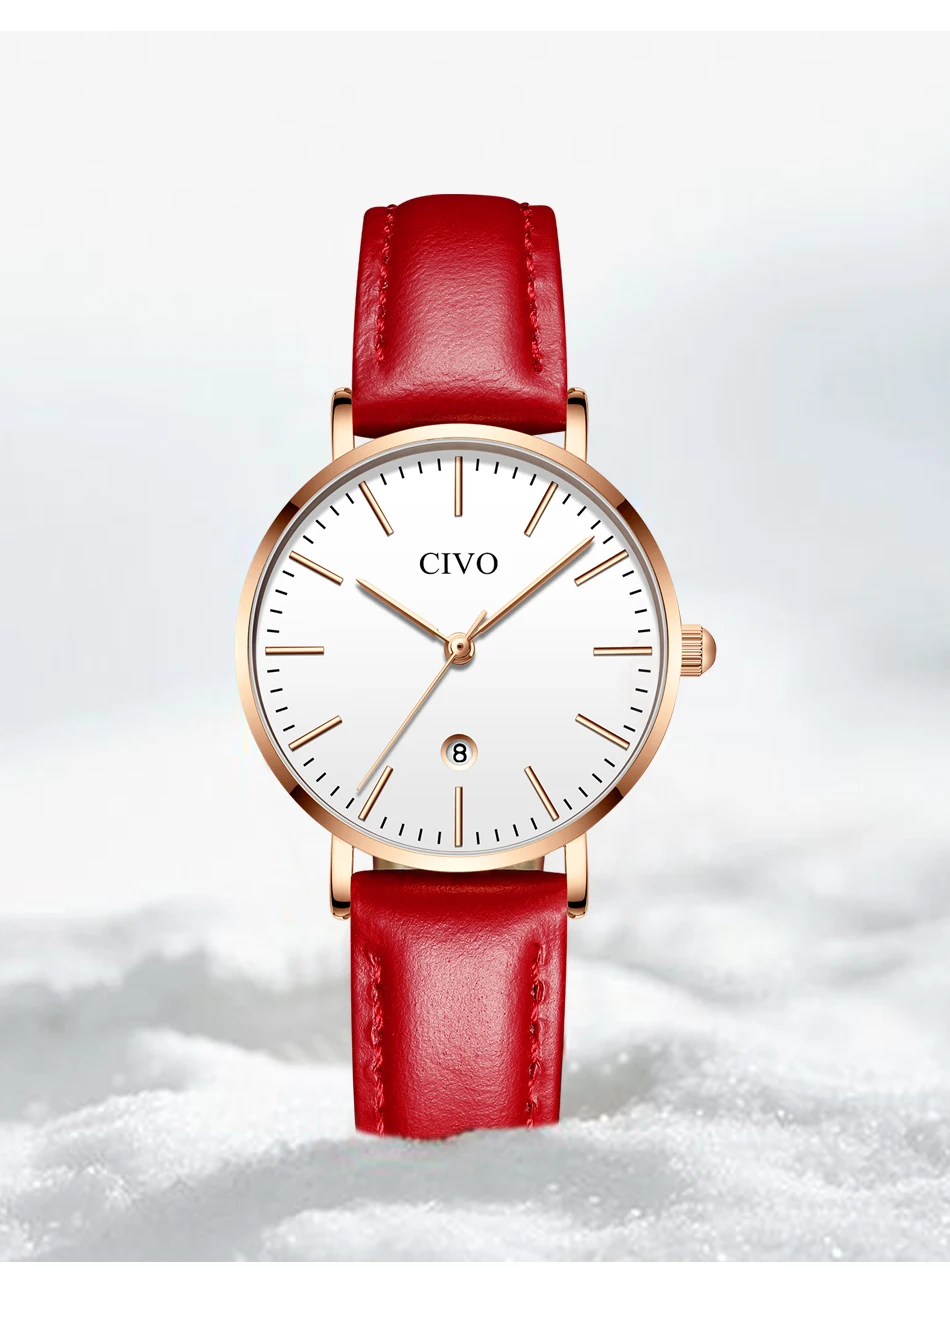 CIVO модные ультра тонкие женские часы лучший бренд класса люкс водостойкие Дата дамы часы красный кожаный ремешок Часы Relogio Feminino